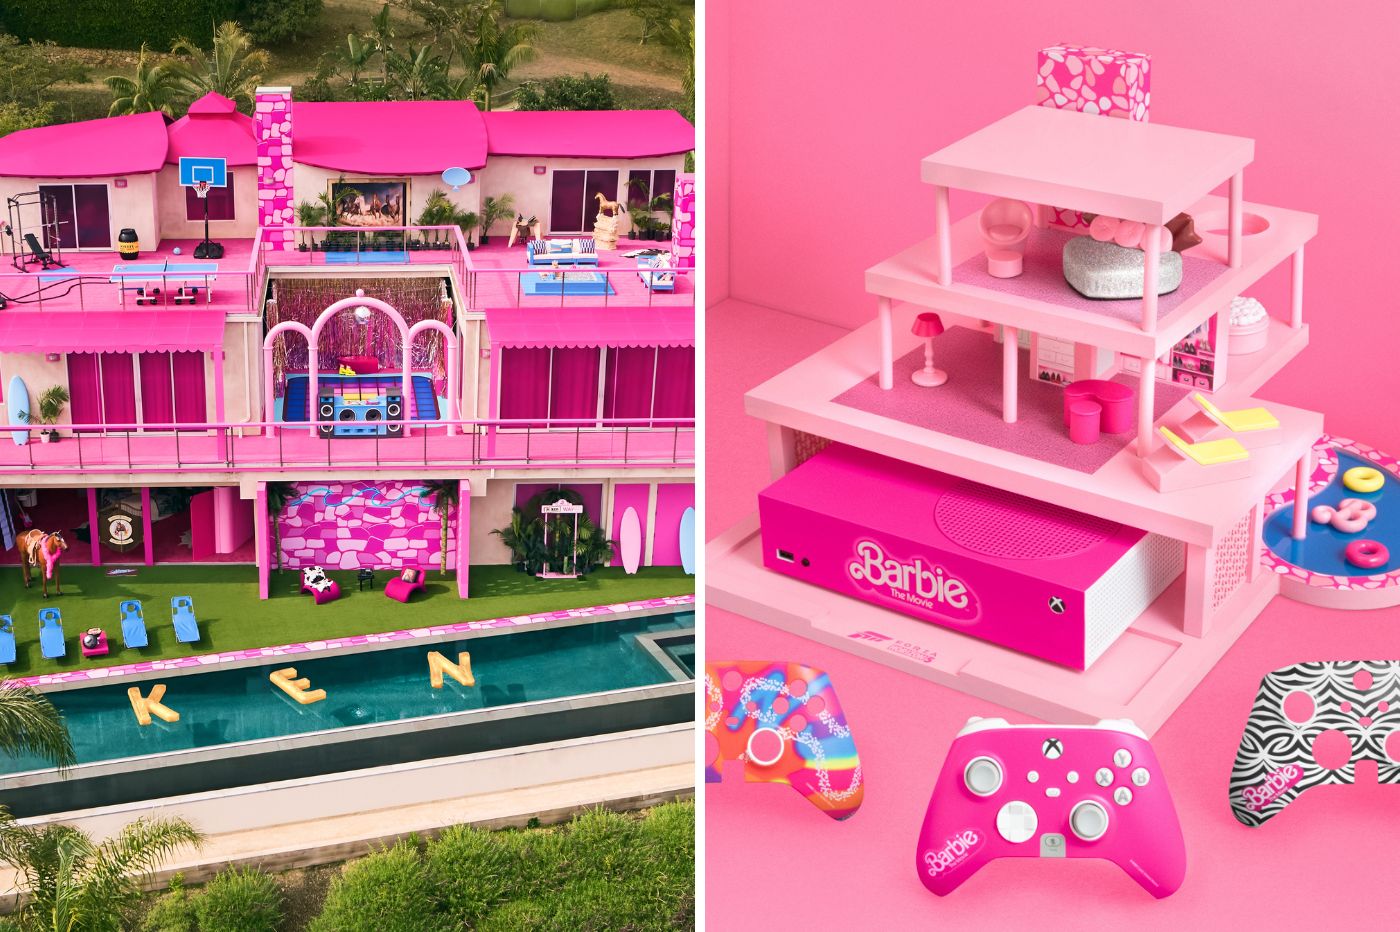 Barbie met sa maison sur Airbnb et dévoile sa Xbox en édition limitée